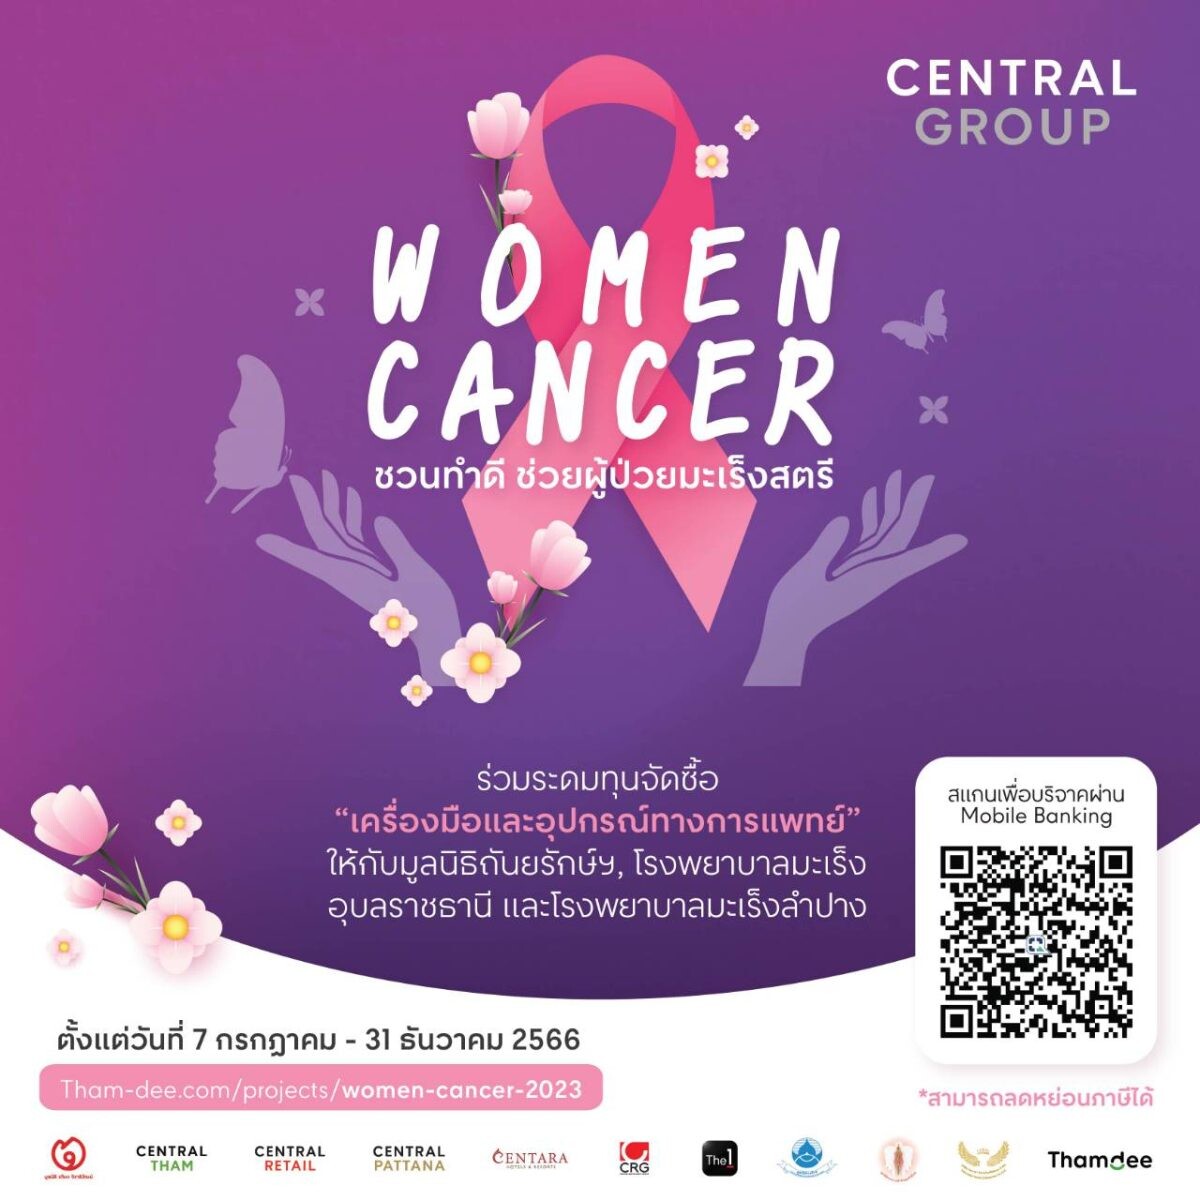 กลุ่มเซ็นทรัล และบริษัทในเครือ ชวนระดมทุนจัดซื้อ "เครื่องมือและอุปกรณ์การแพทย์" กับโครงการ "Central Group Women Cancer" ครั้งที่18